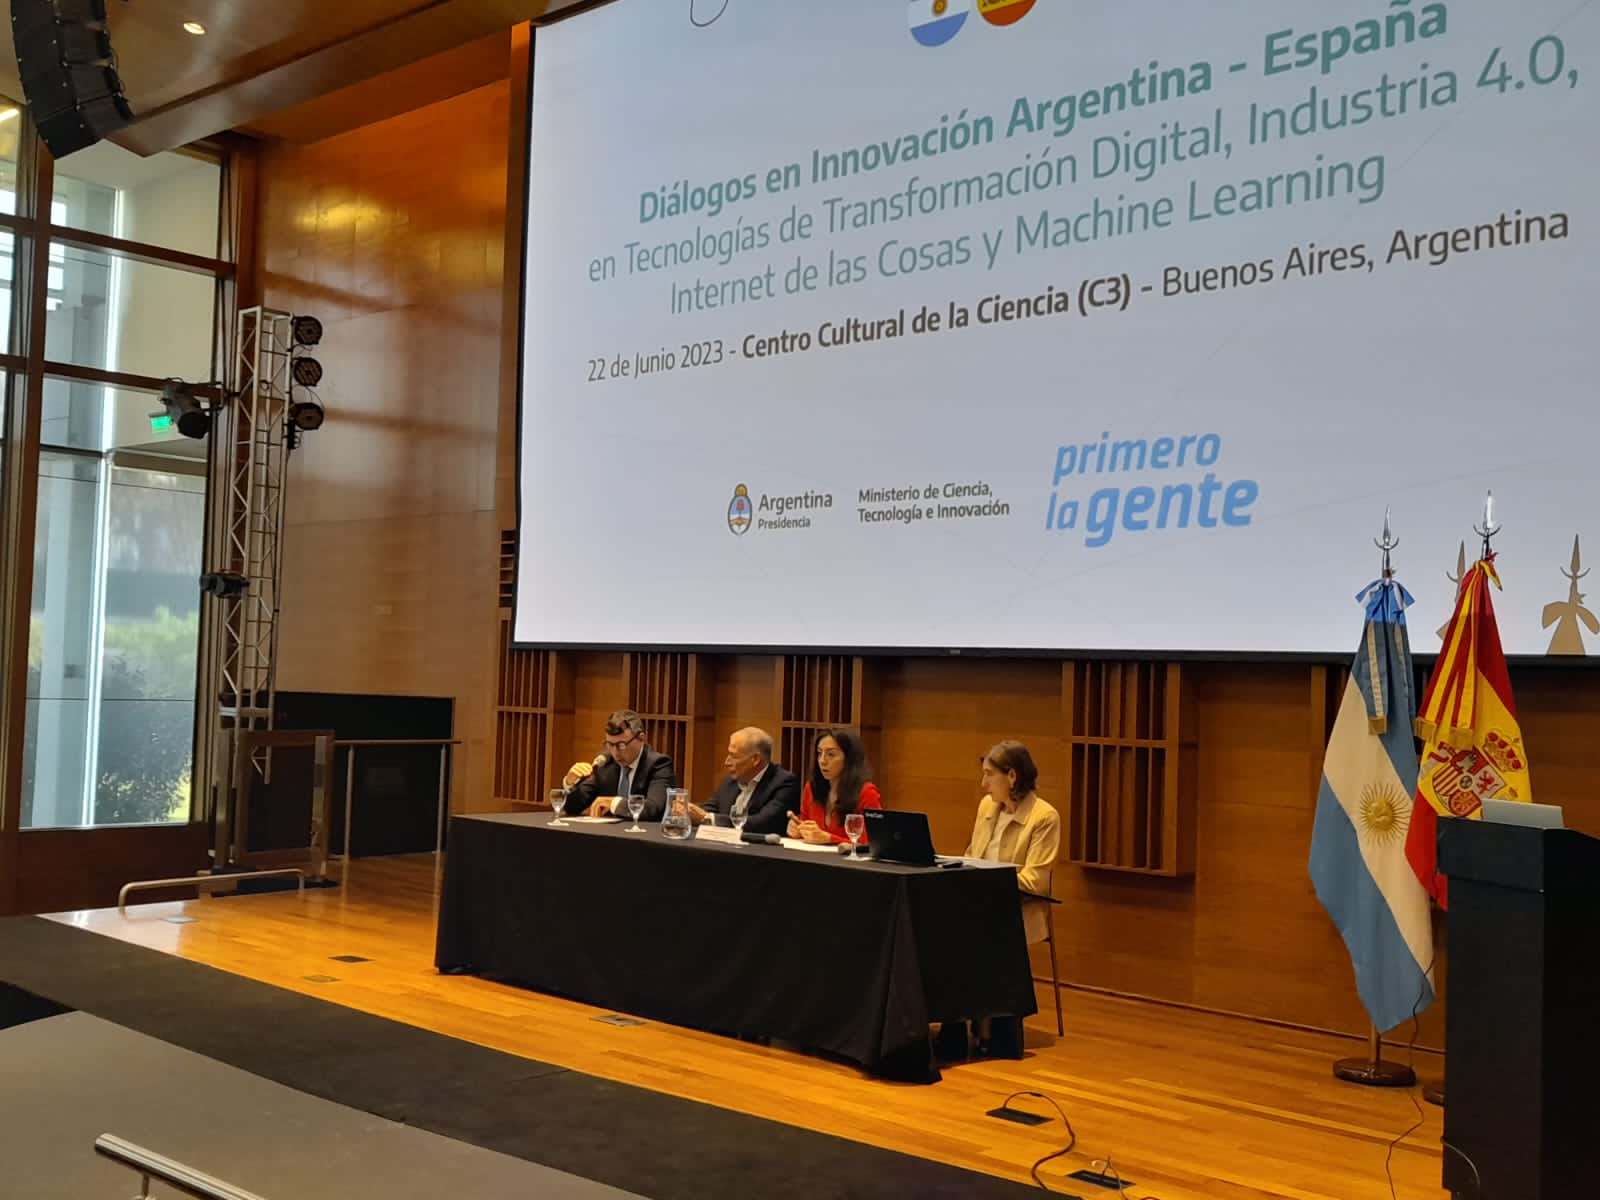 El CDTI invita a Alvantia a presentar sus capacidades tecnológicas en Argentina